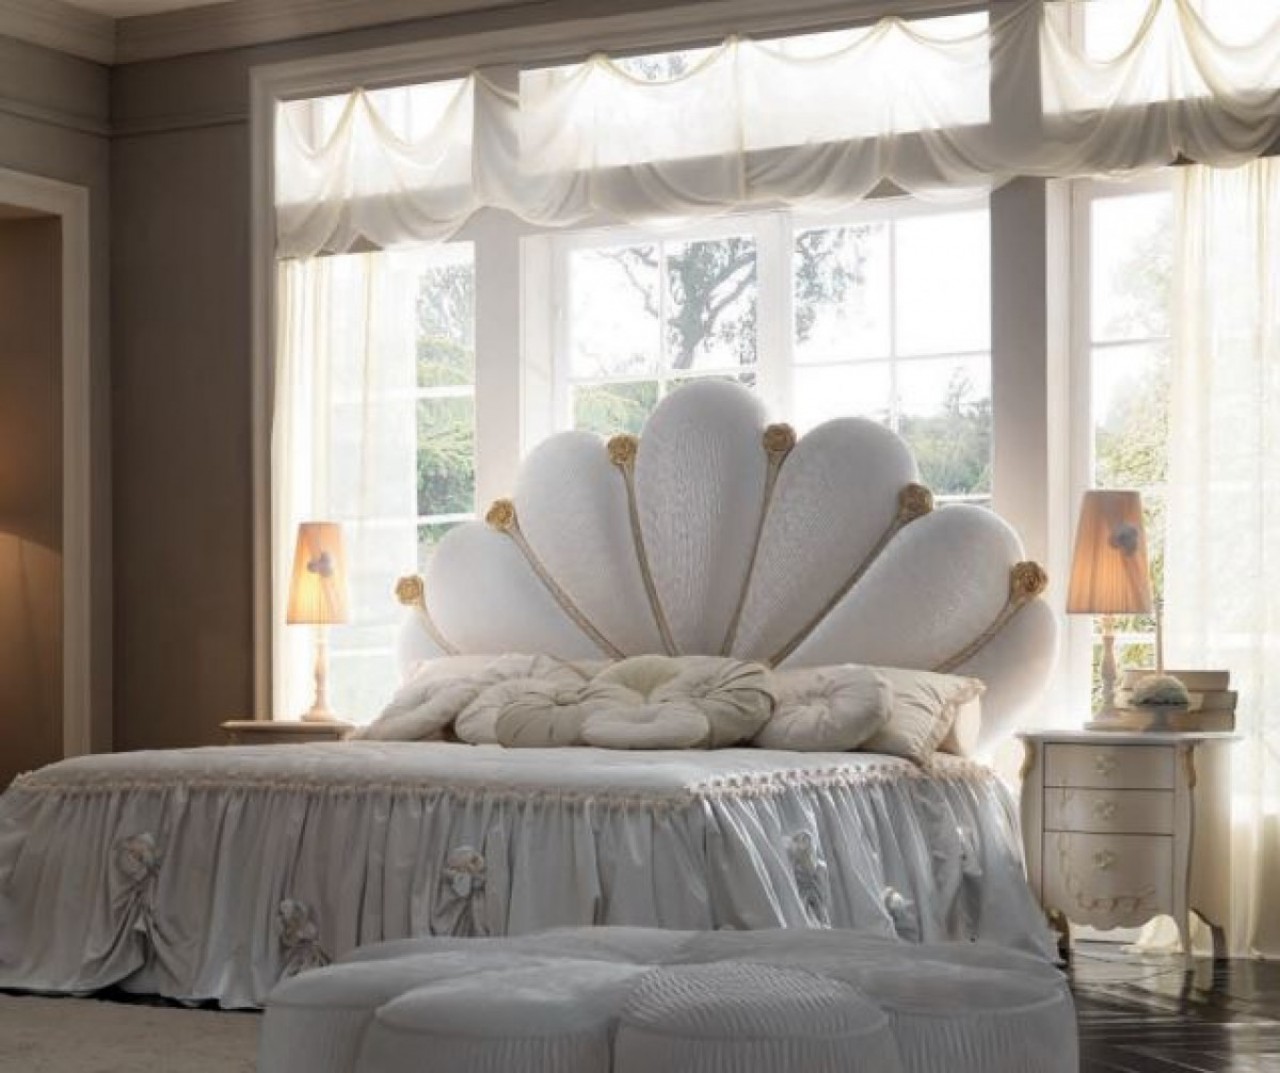 Những chiếc giường được thiết kế cầu kỳ là đặc trưng của phong cách cổ điển